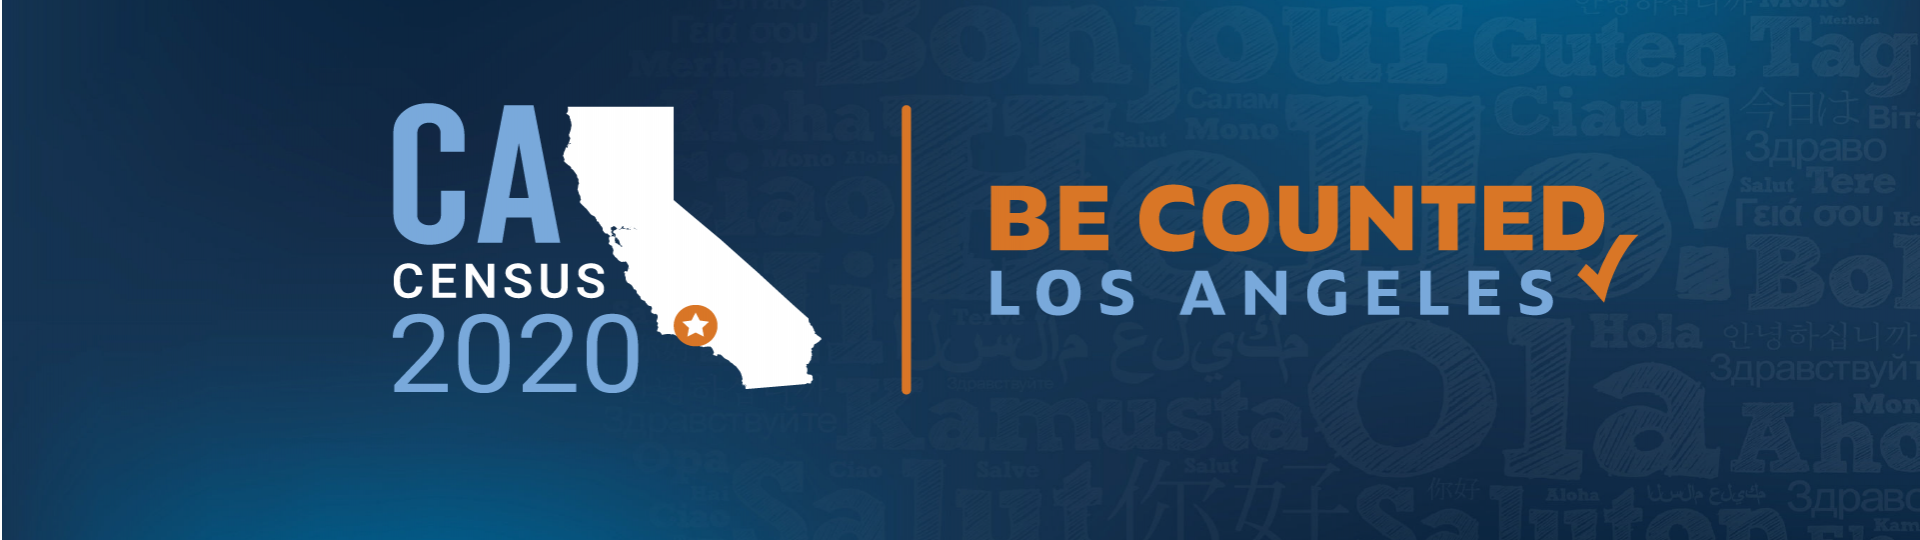 Logo Bản đồ California với nội dung Chương trình Điều tra Dân số Năm 2020 được thống kê trên toàn Thành phố Los Angeles.